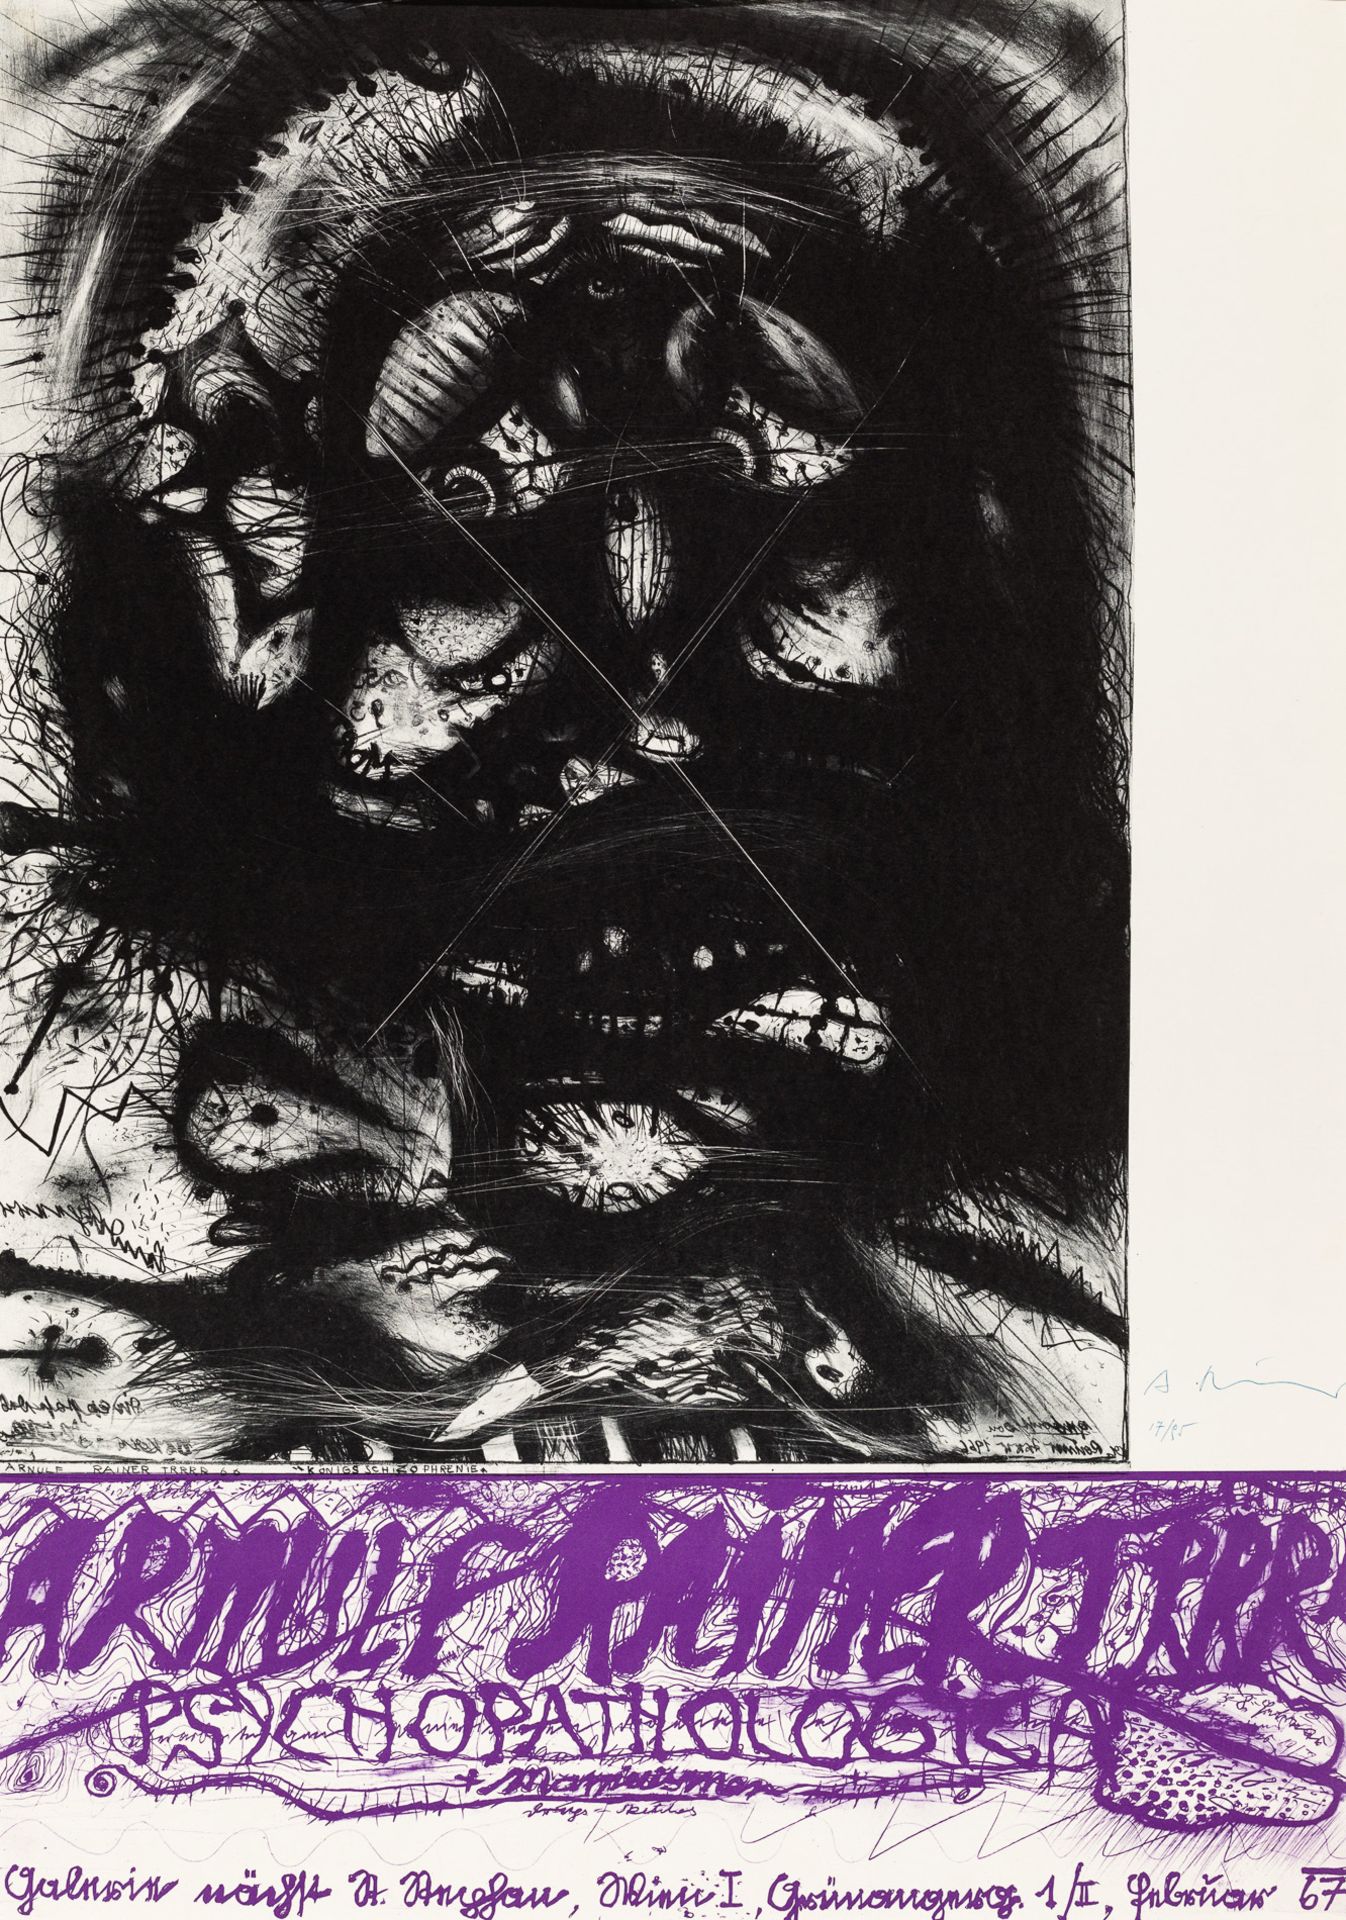 Arnulf Rainer, Ohne Titel (Ausstellungsplakat "Psychopathologica, Manierismen, Drug-Sketches")